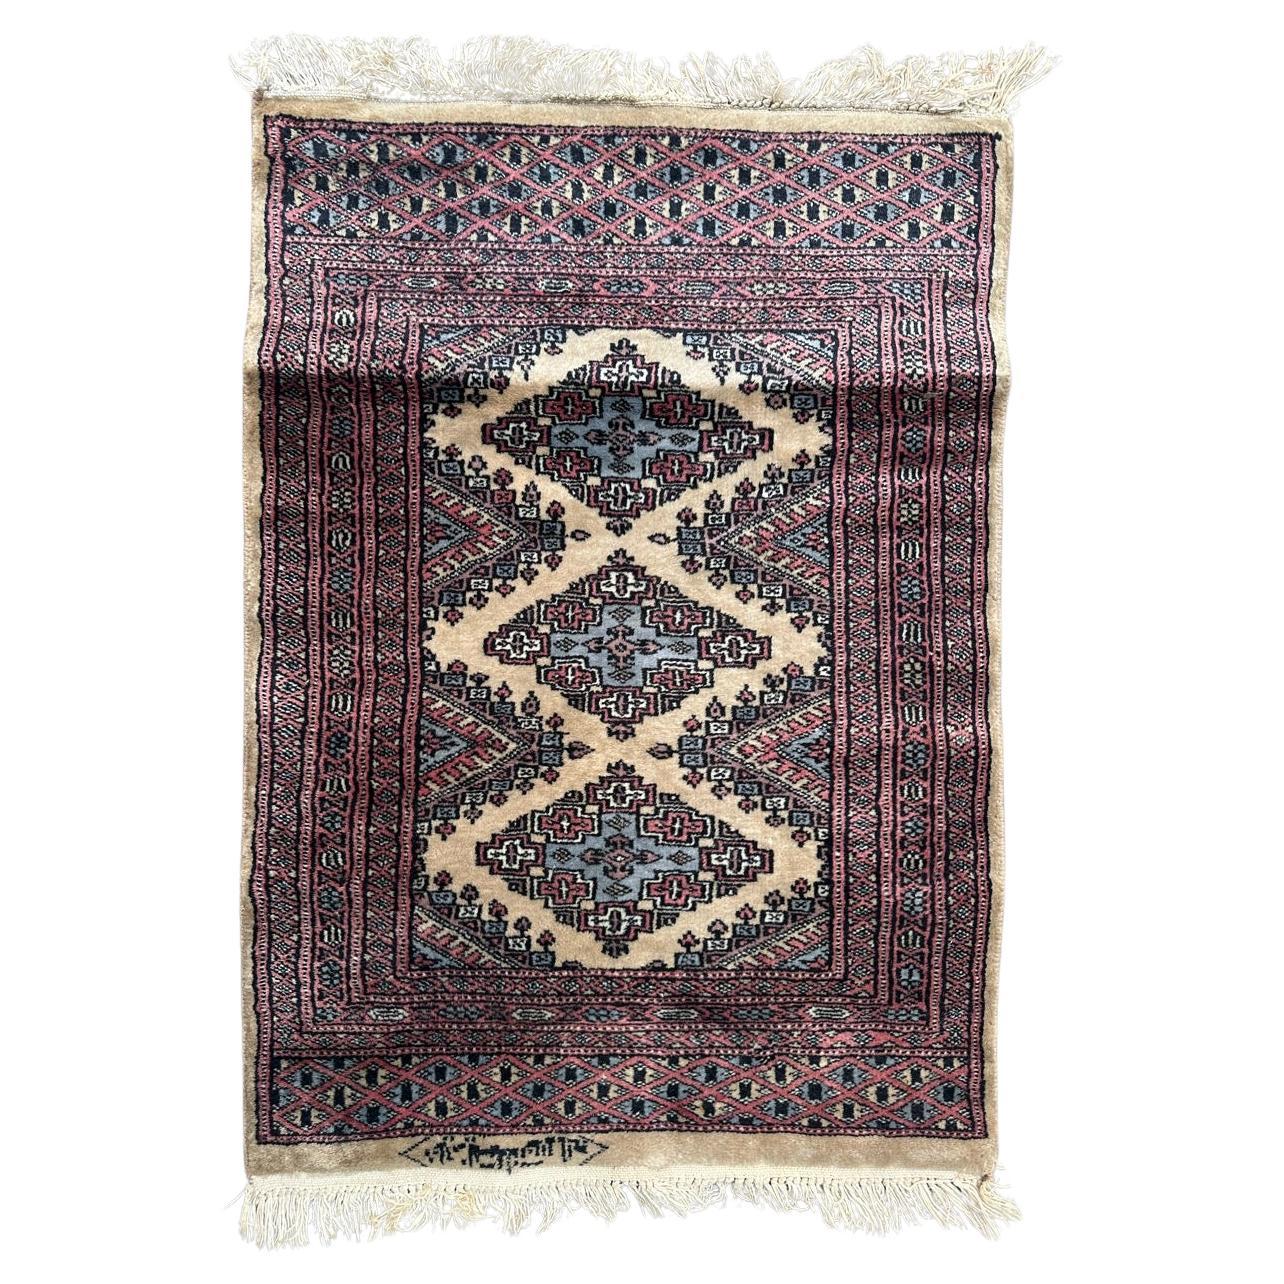  Petit tapis pakistanais vintage